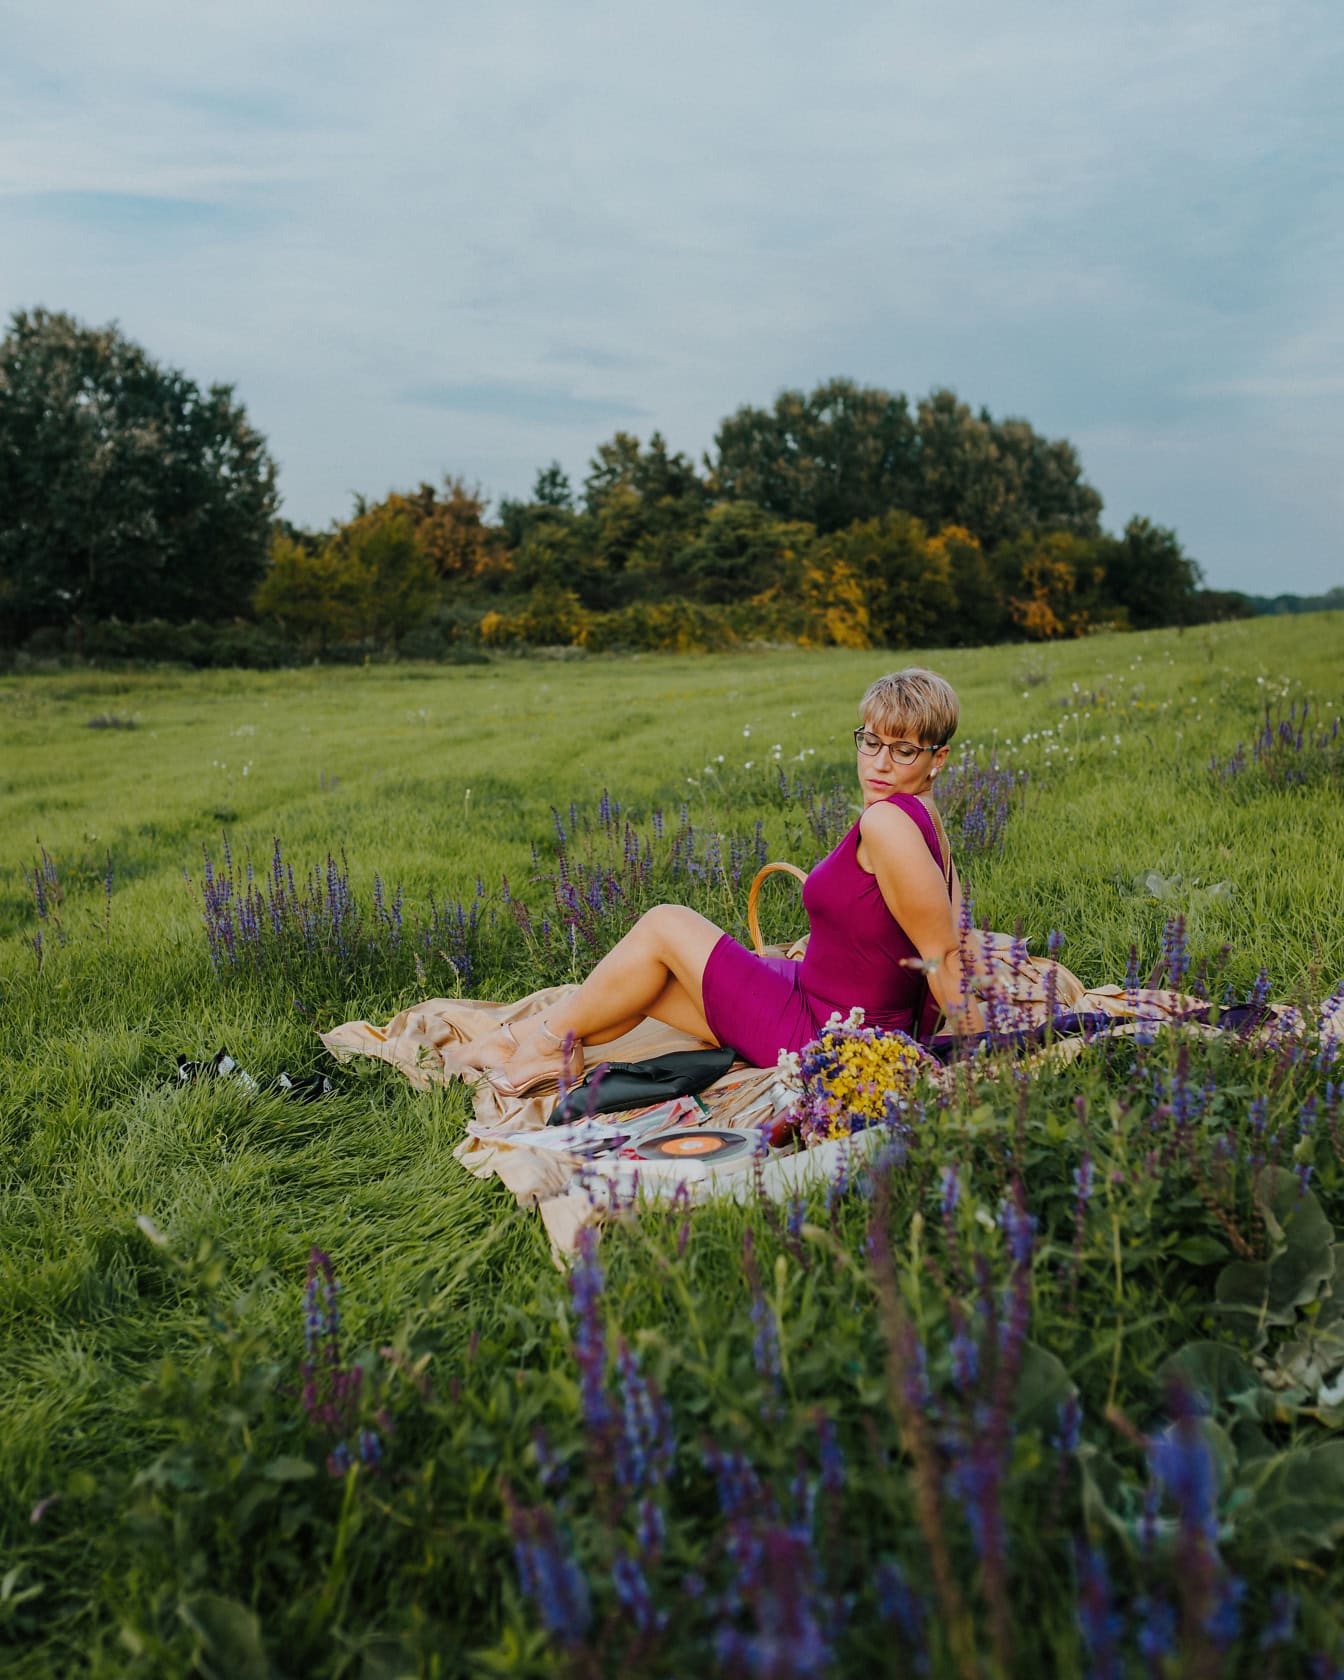 짙은 분홍색 드레스를 입은 여자가 꽃밭에서 피크닉 담요에 앉아 포즈를 취하고 있습니다.